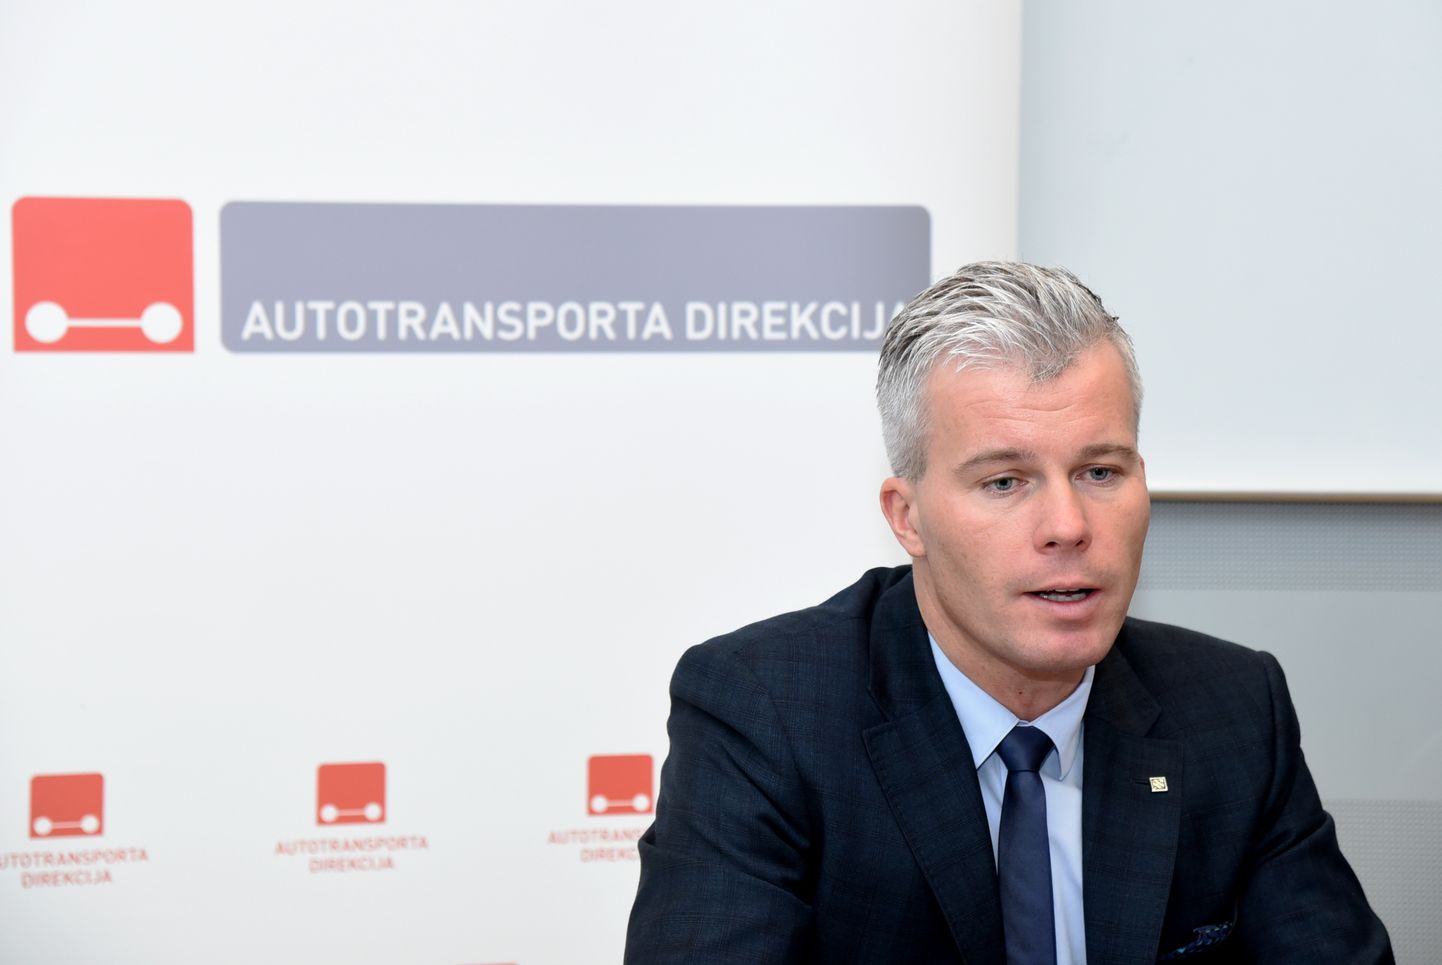 Autotransporta direkcijas valdes priekšsēdētājs Kristiāns Godiņš.